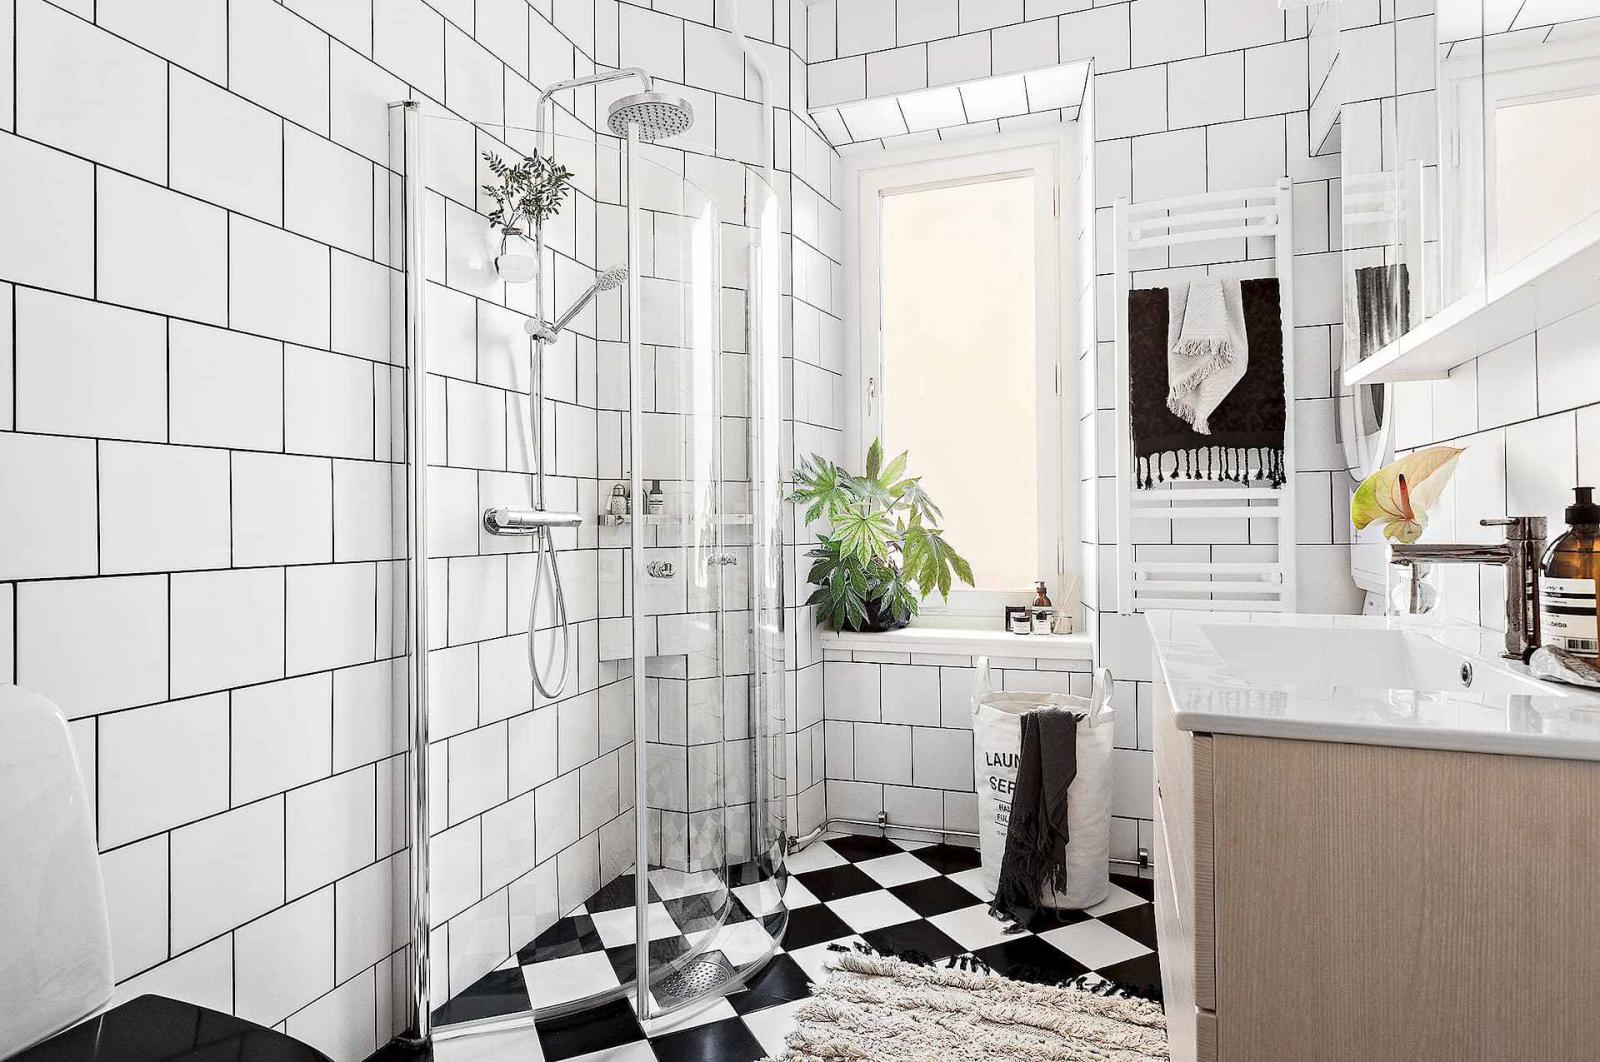 Hình ảnh phòng tắm sang trọng, sạch sẽ với tường ốp gạch trắng, sàn lát gạch đen - trắng